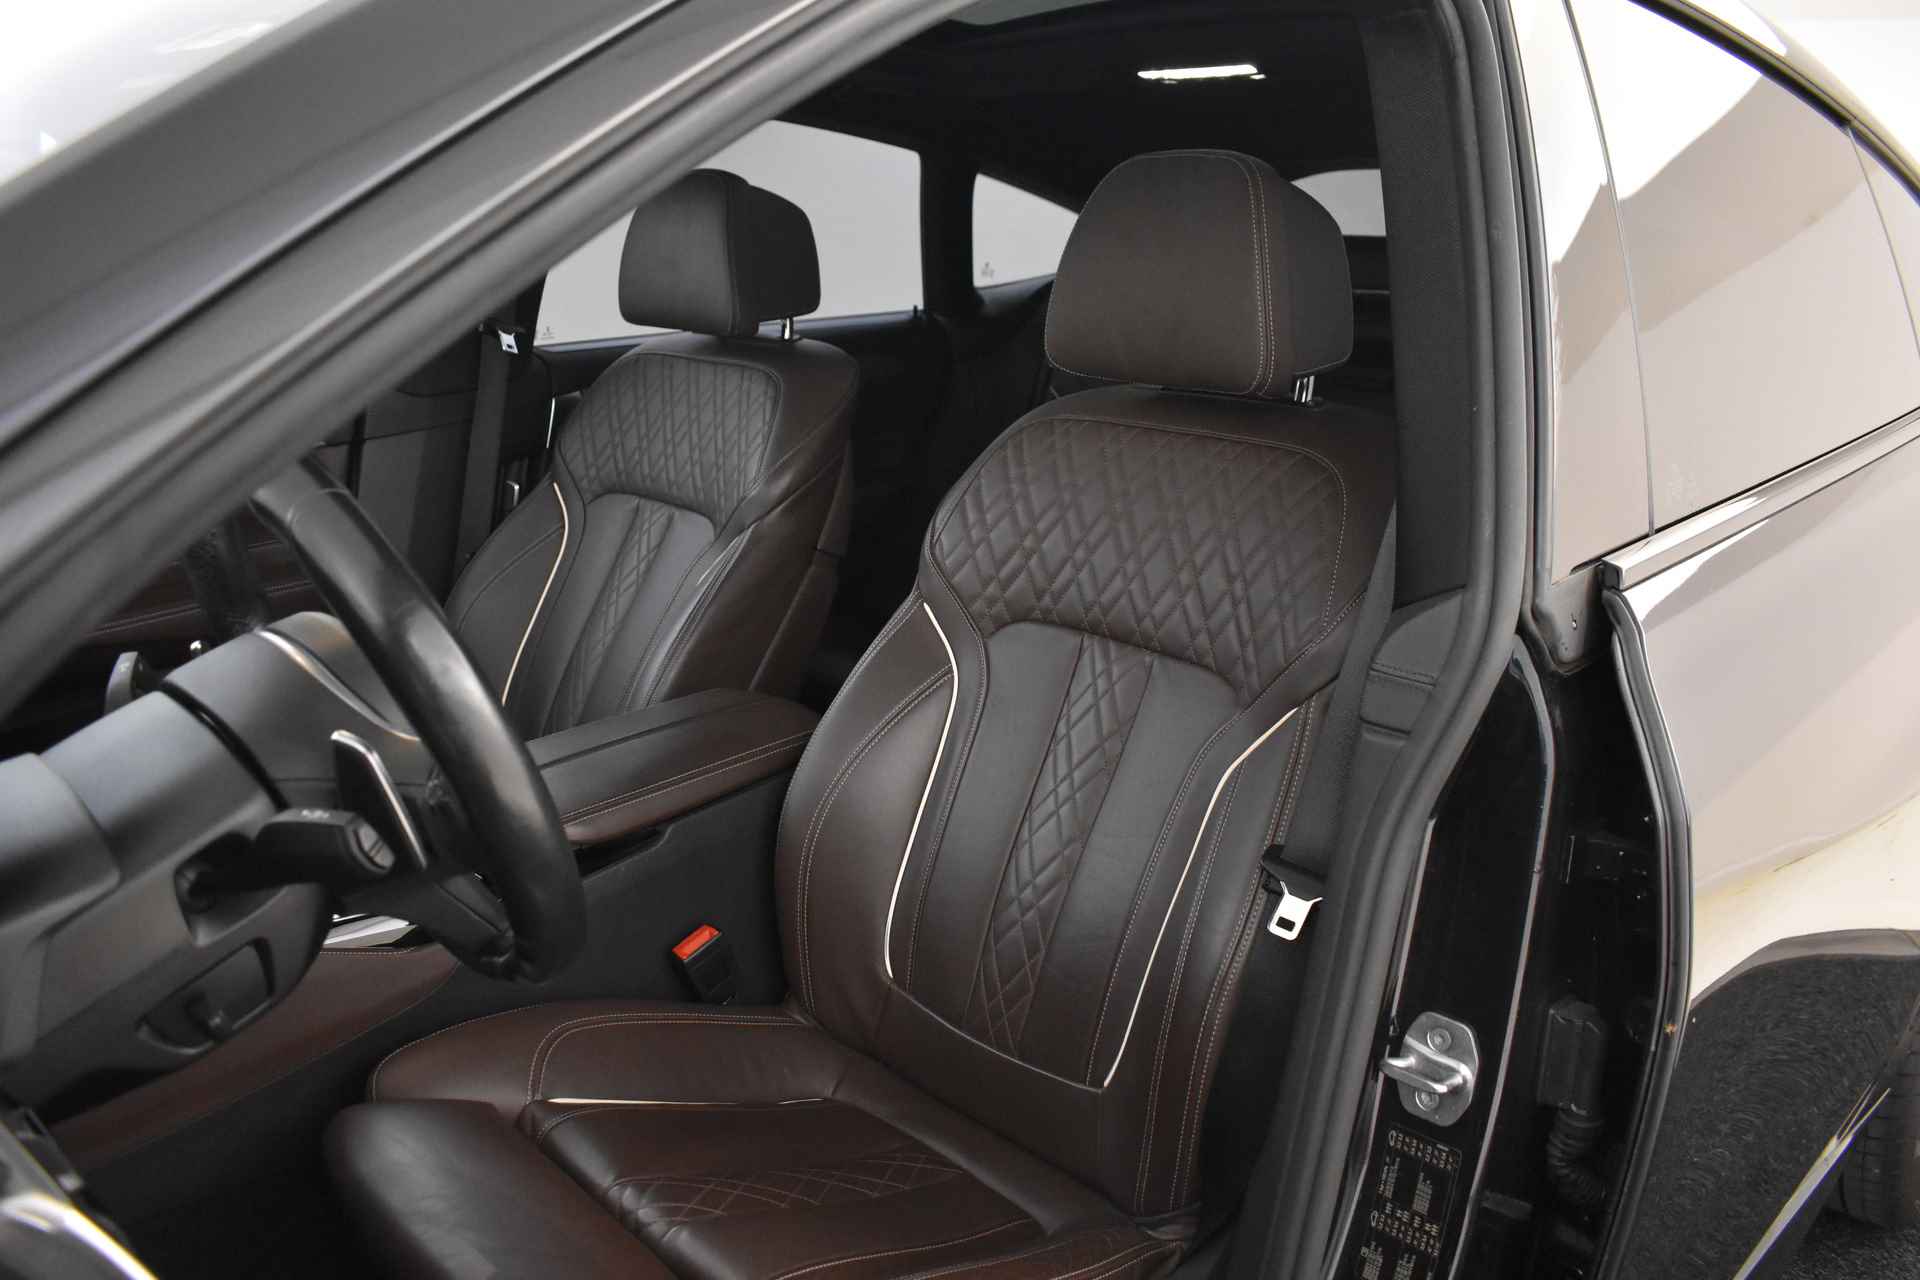 BMW 6 Serie Gran Turismo 640i High Executive M Sport Automaat / Panoramadak / Adaptieve LED / Active Cruise Control / Harman Kardon / Navigatie Professional / Comfort Access - 14/58